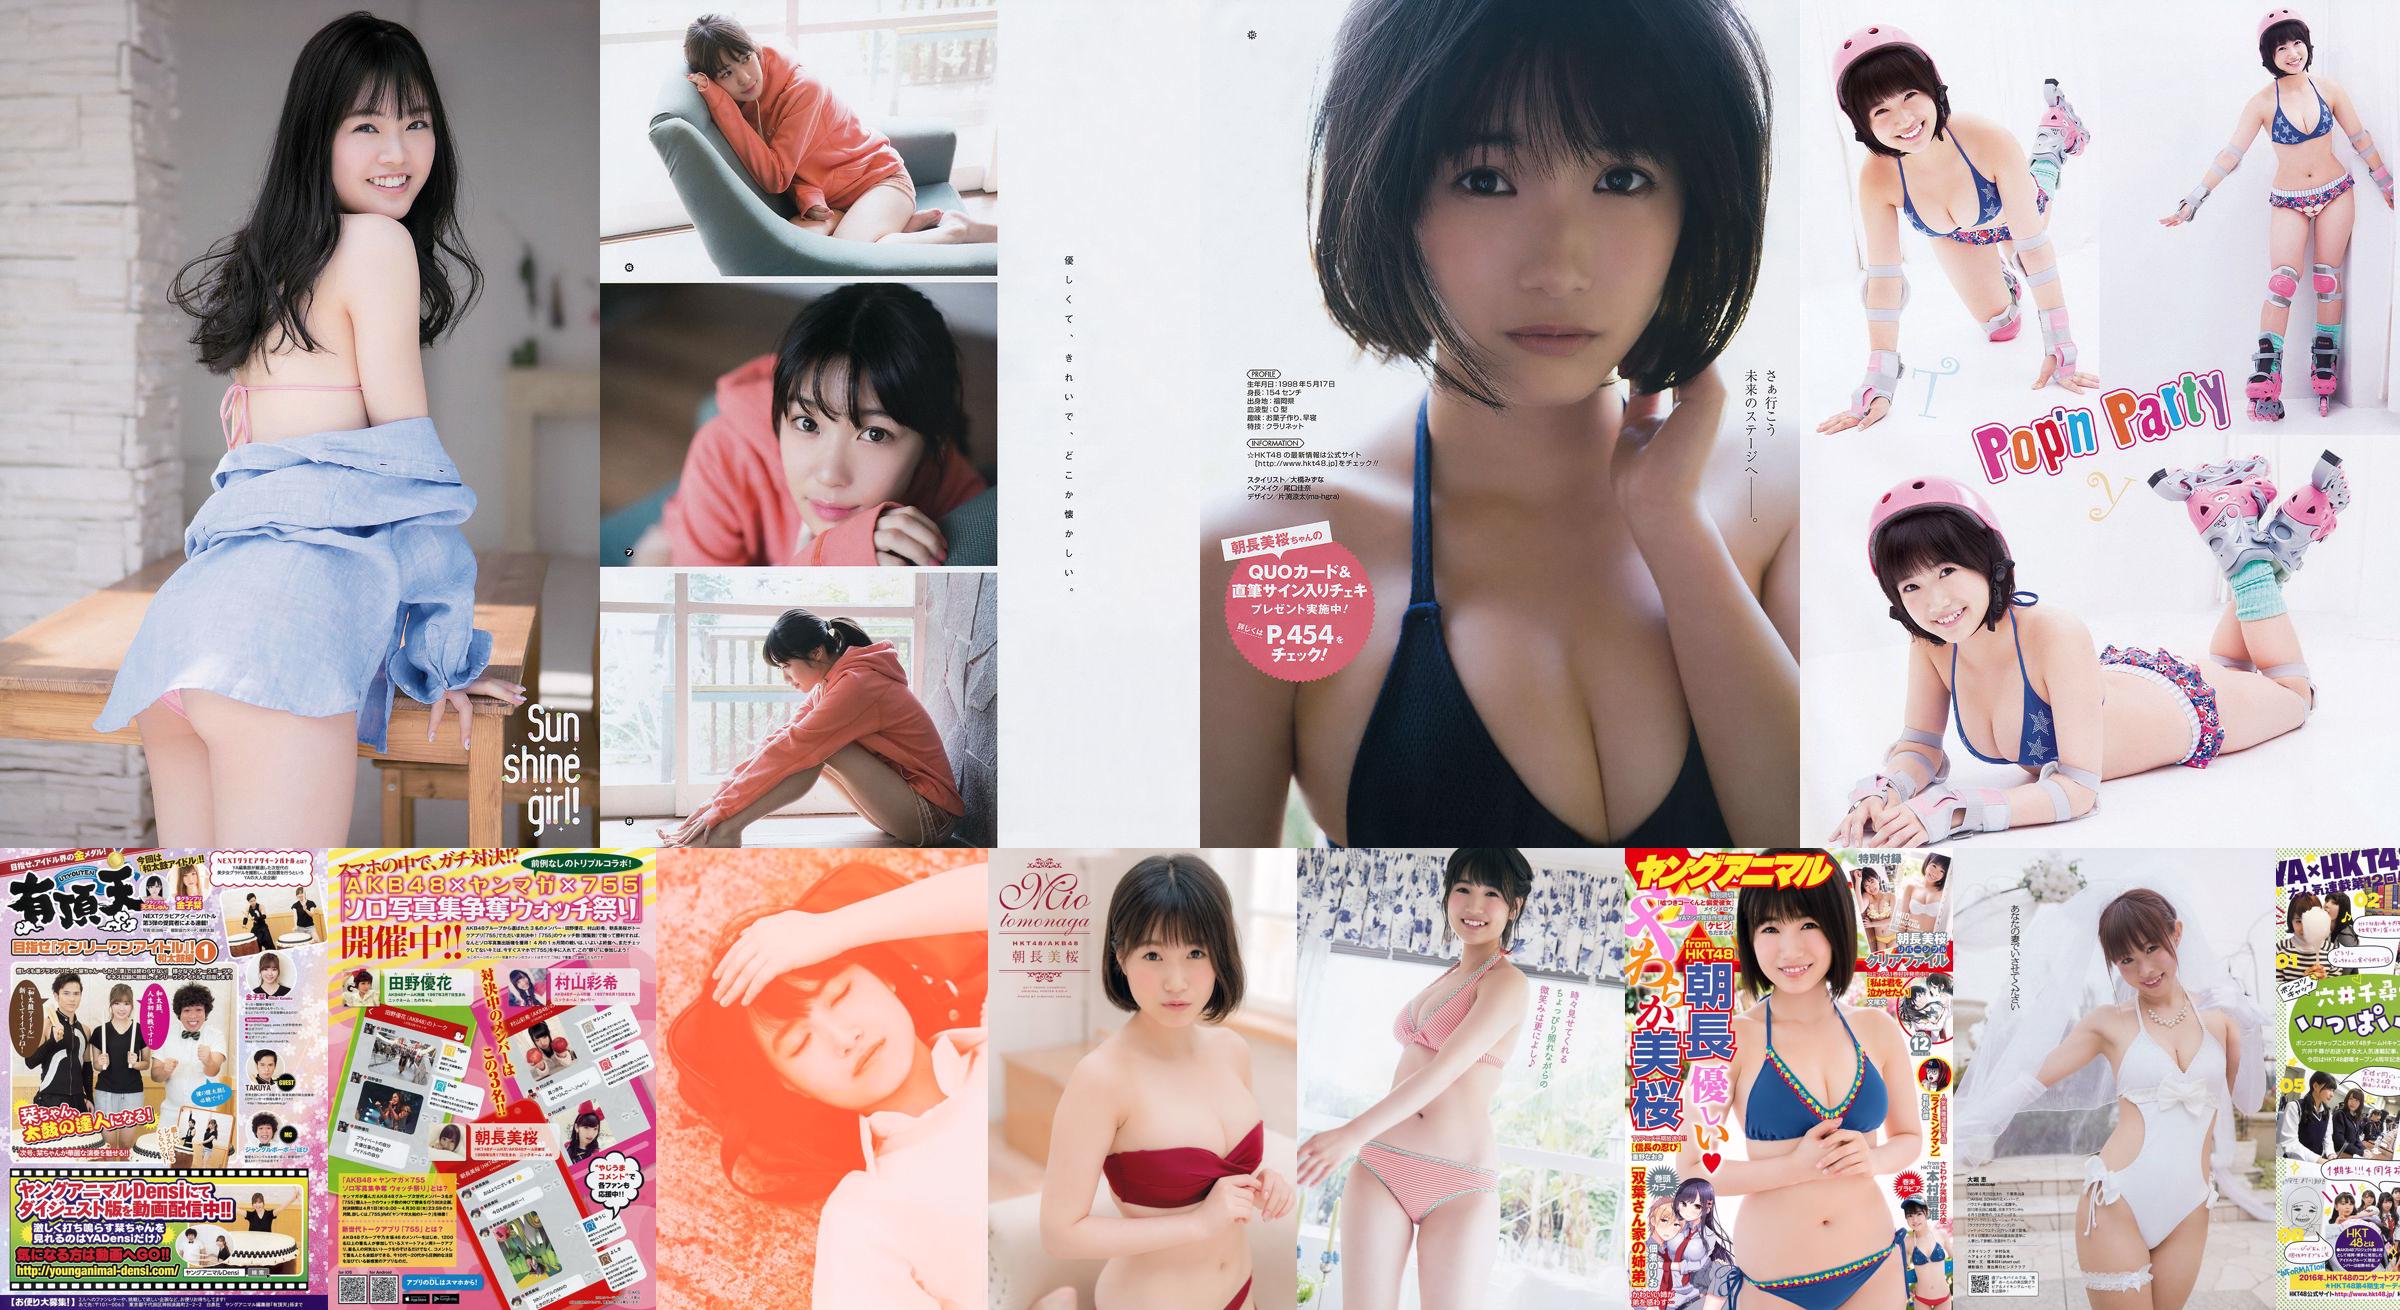 [Young Magazine] Mio Tomonaga Ruika 2016 No.32 Photograph No.3c0de6 Page 3